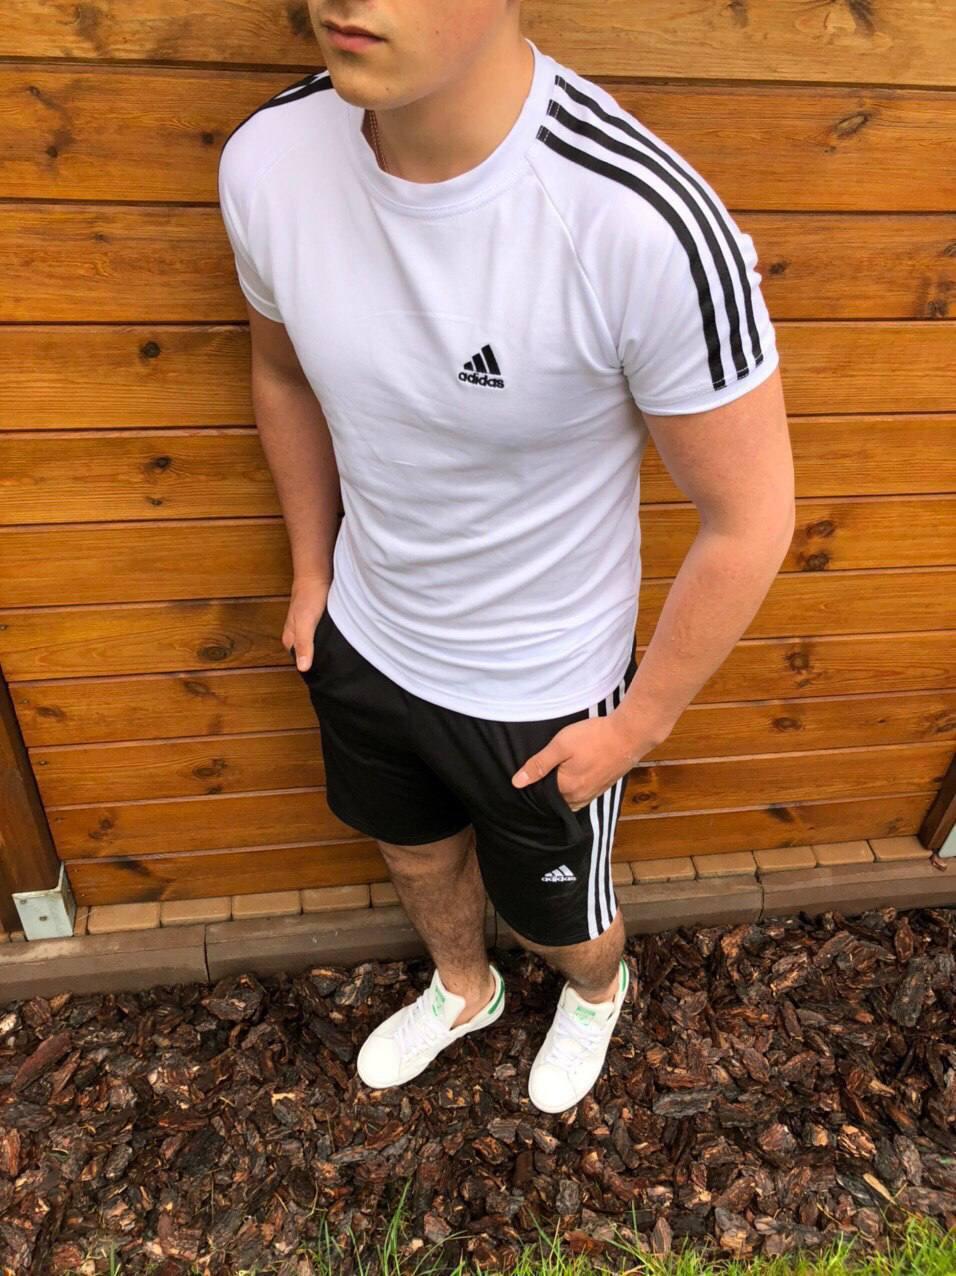 Чоловіча футболка Adidas біла зі смугами спортивна Адідас із лампасами